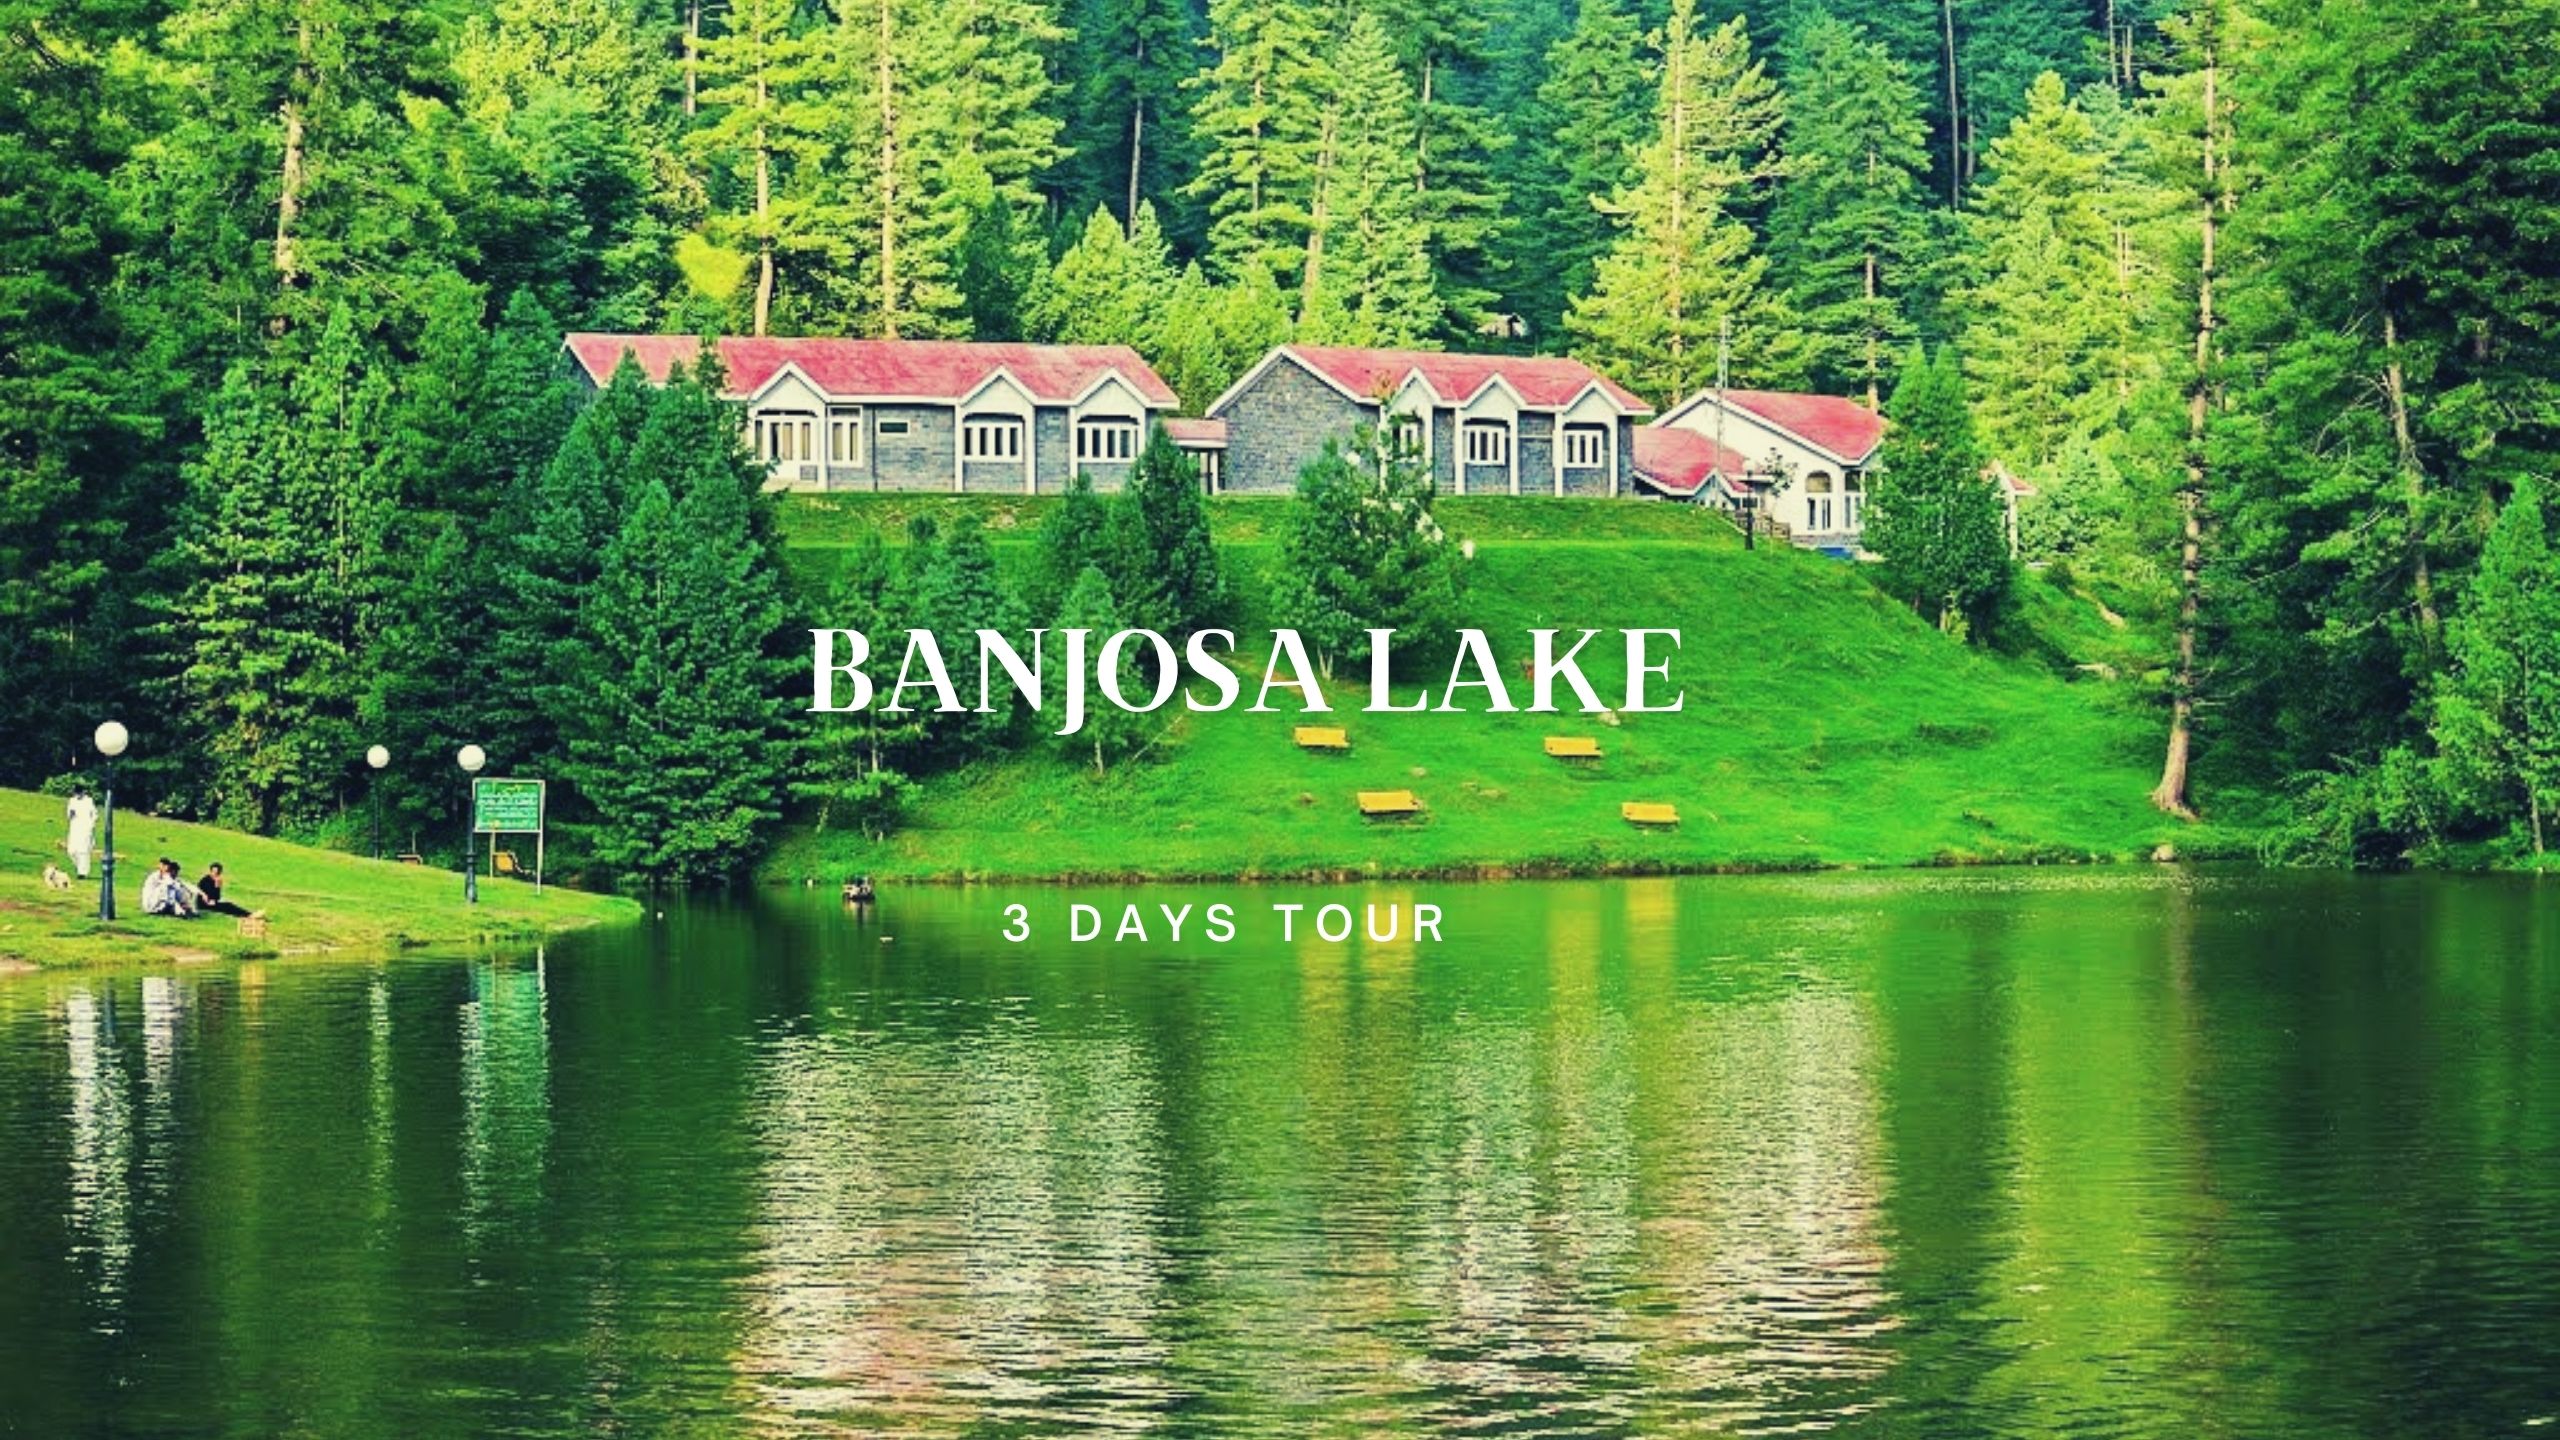 3 Days Tour to Banjosa Lake 